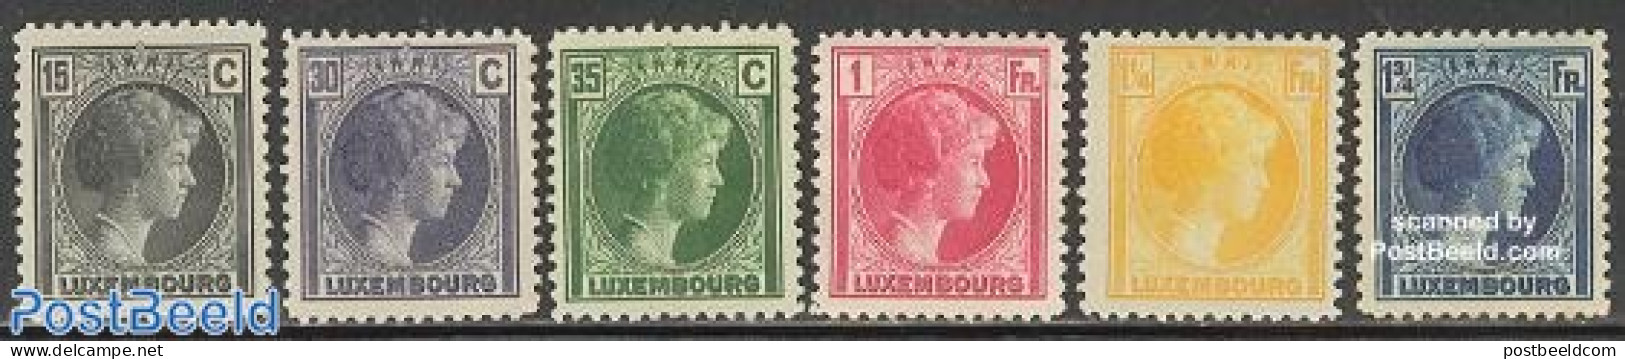 Luxemburg 1930 Definitives 6v, Unused (hinged) - Nuovi